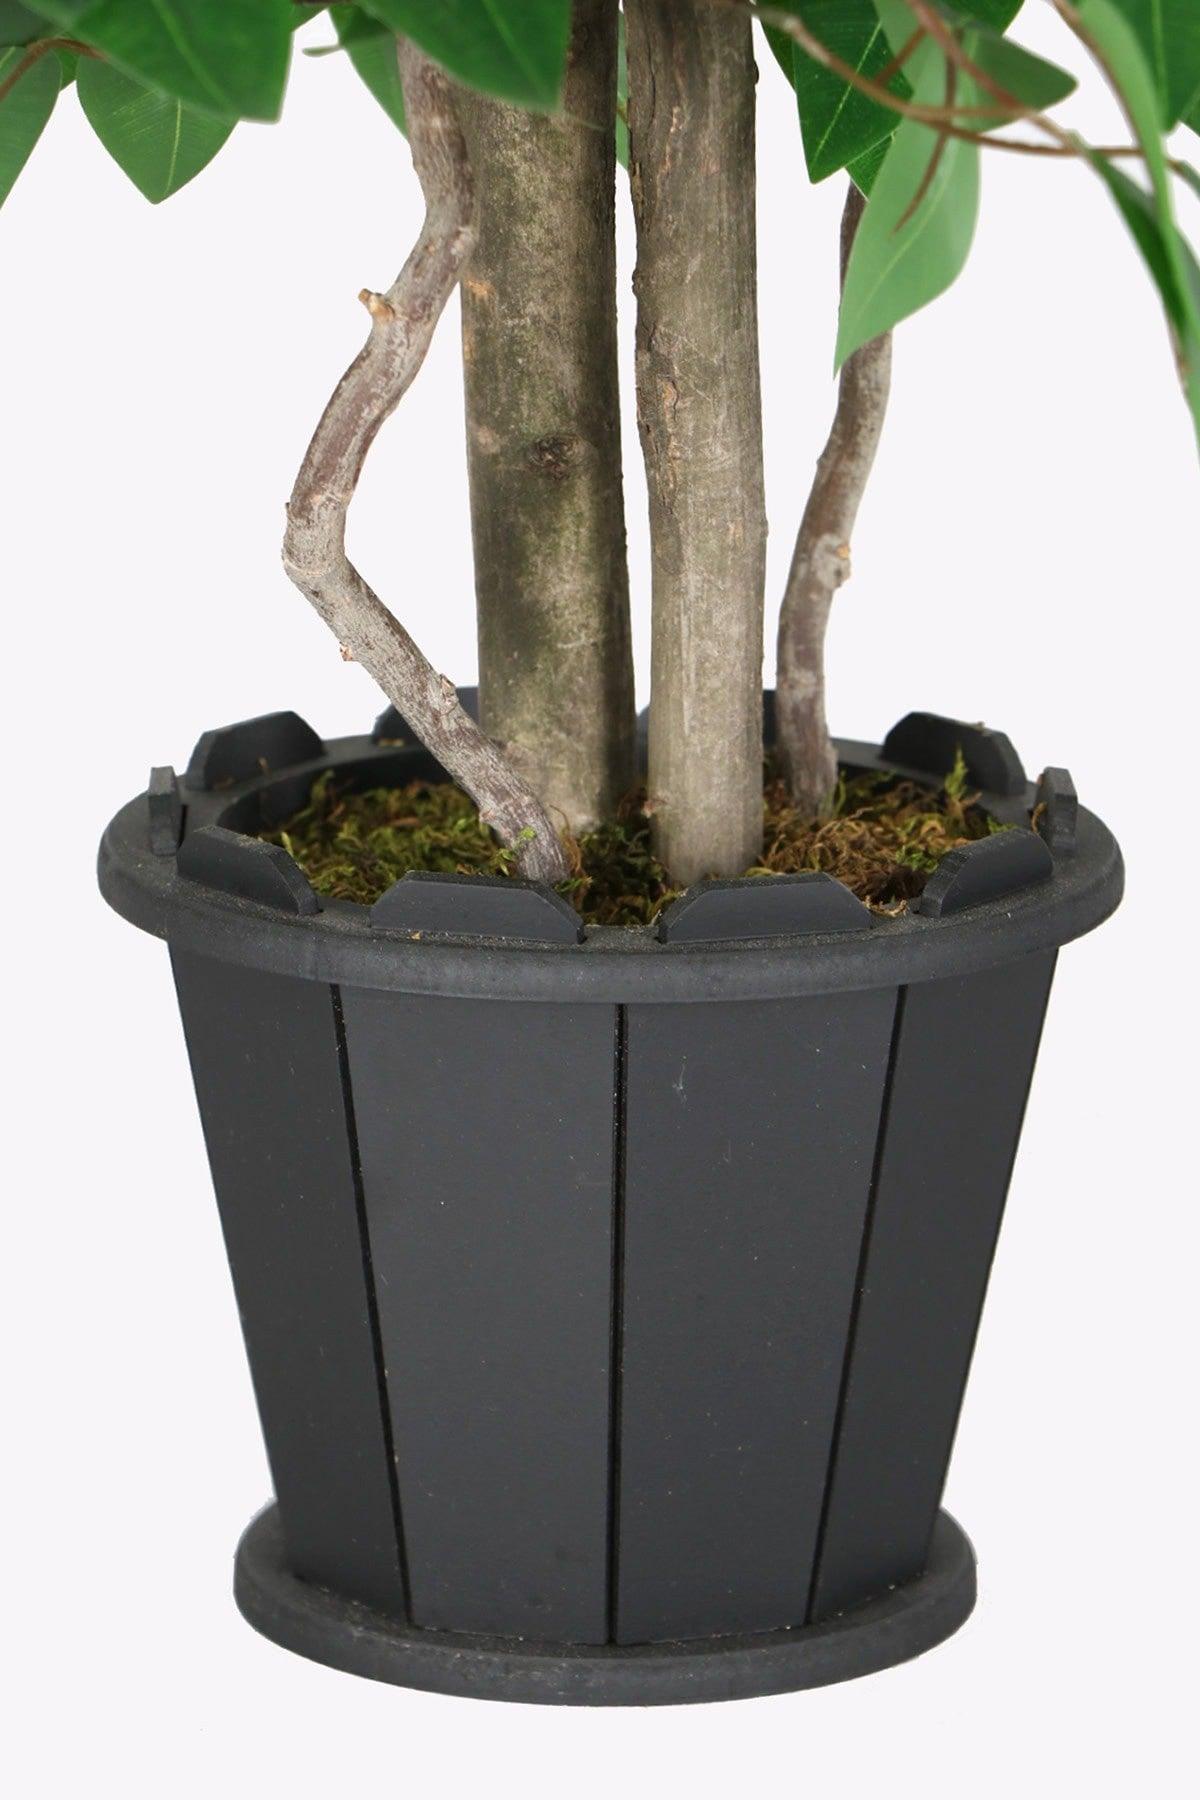 Artificial Benjamin Tree in Wooden Pot 100 Cm Green - Swordslife